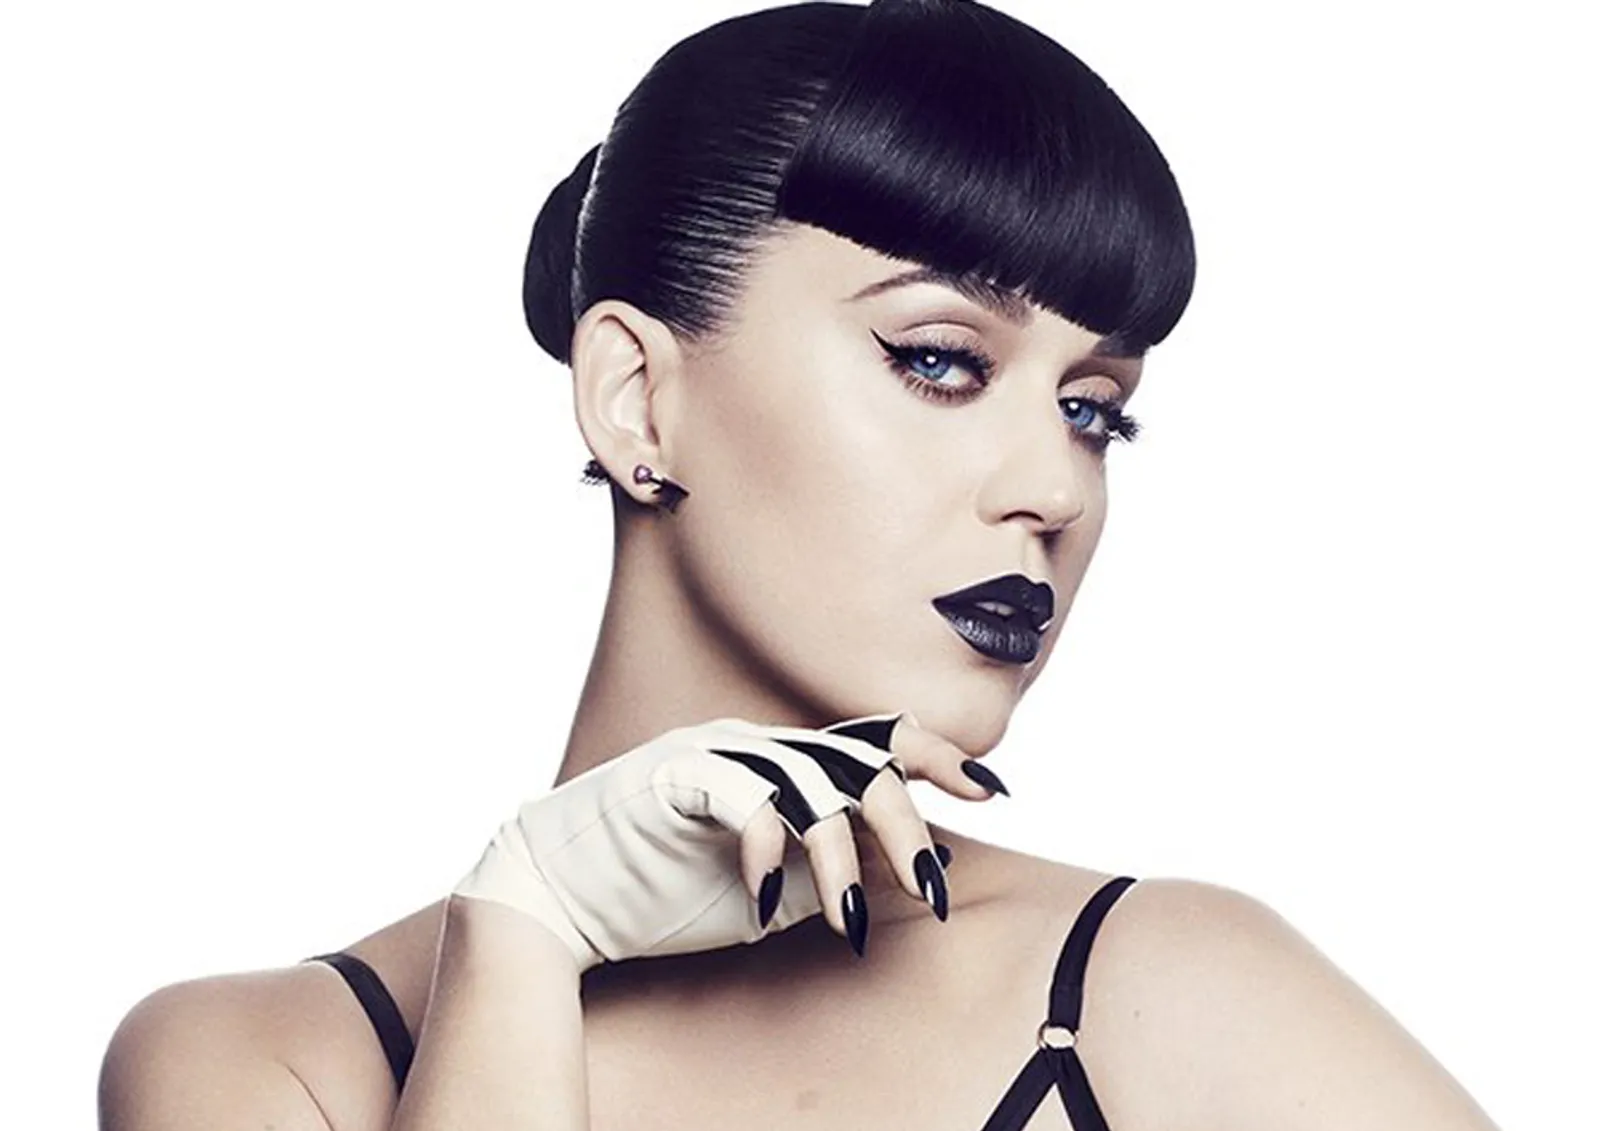 Ini Transformasi Gaya Rambut Katy Perry Selama 7 Tahun Terakhir